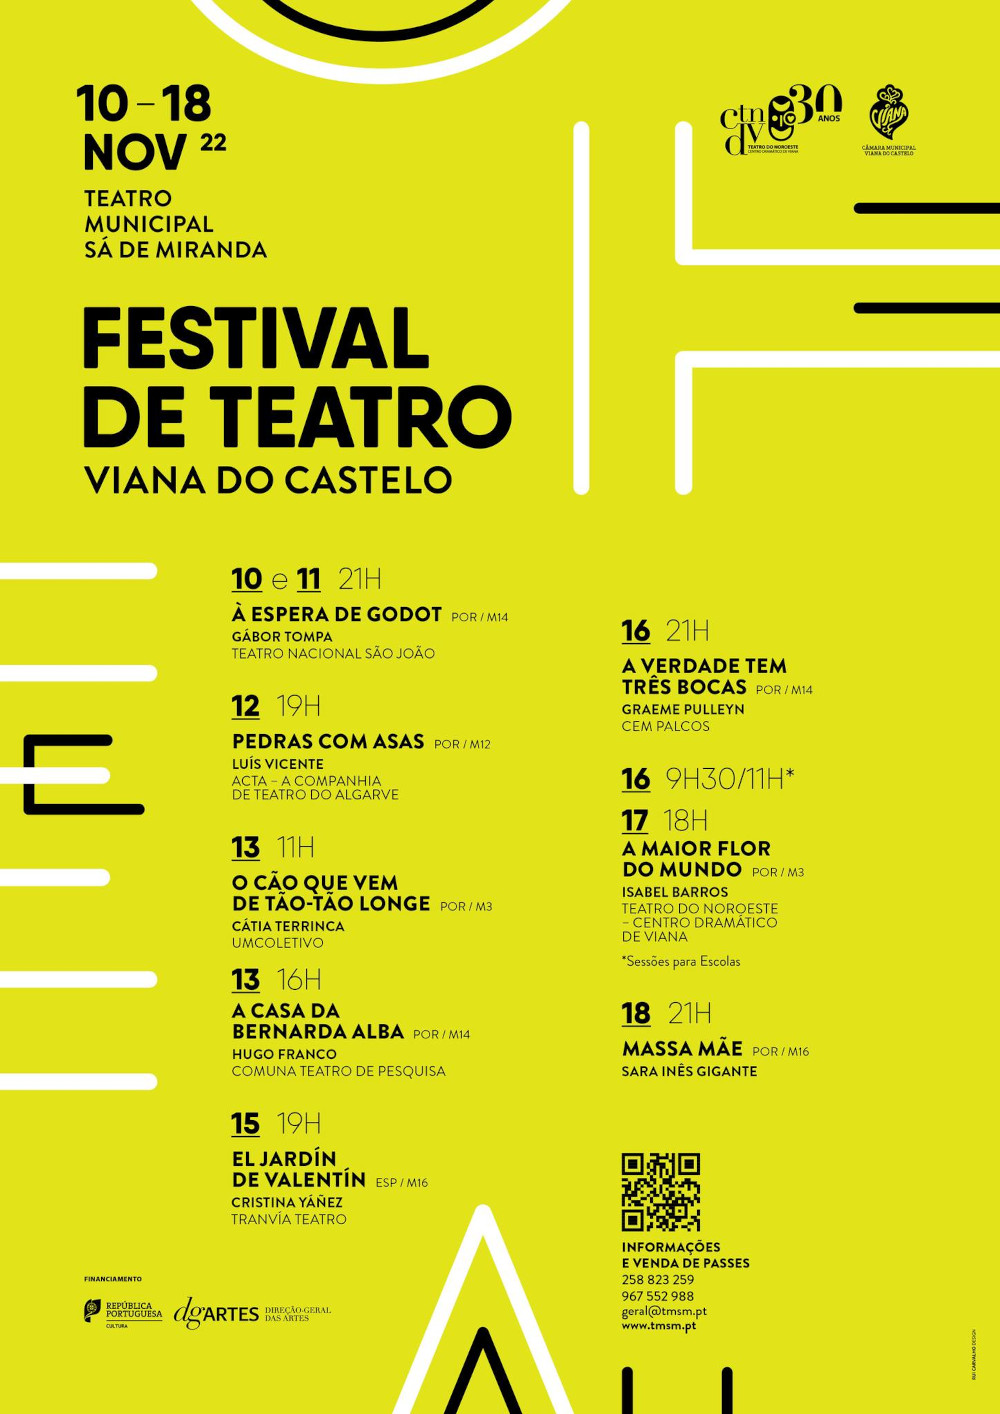 Leia mais sobre Festival de Teatro de Viana do Castelo